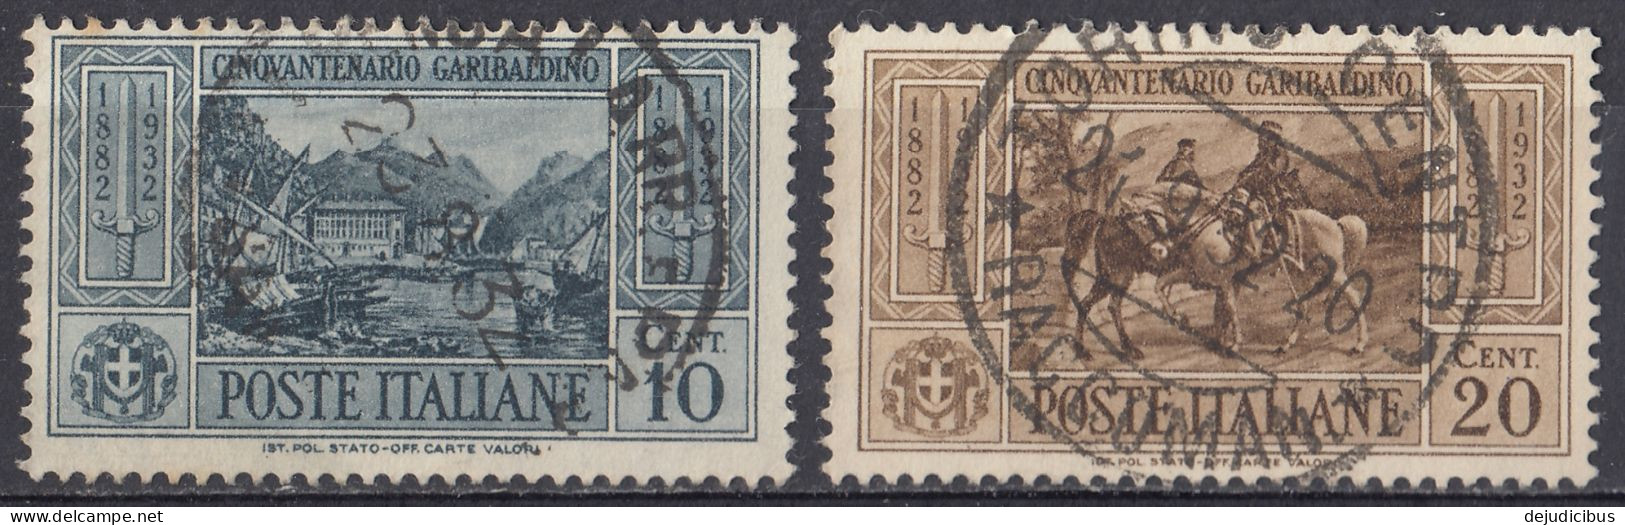 ITALIA - 1932 - Lotto Di 2 Valori Usati:  Yvert 295 E 296. - Postpaketten